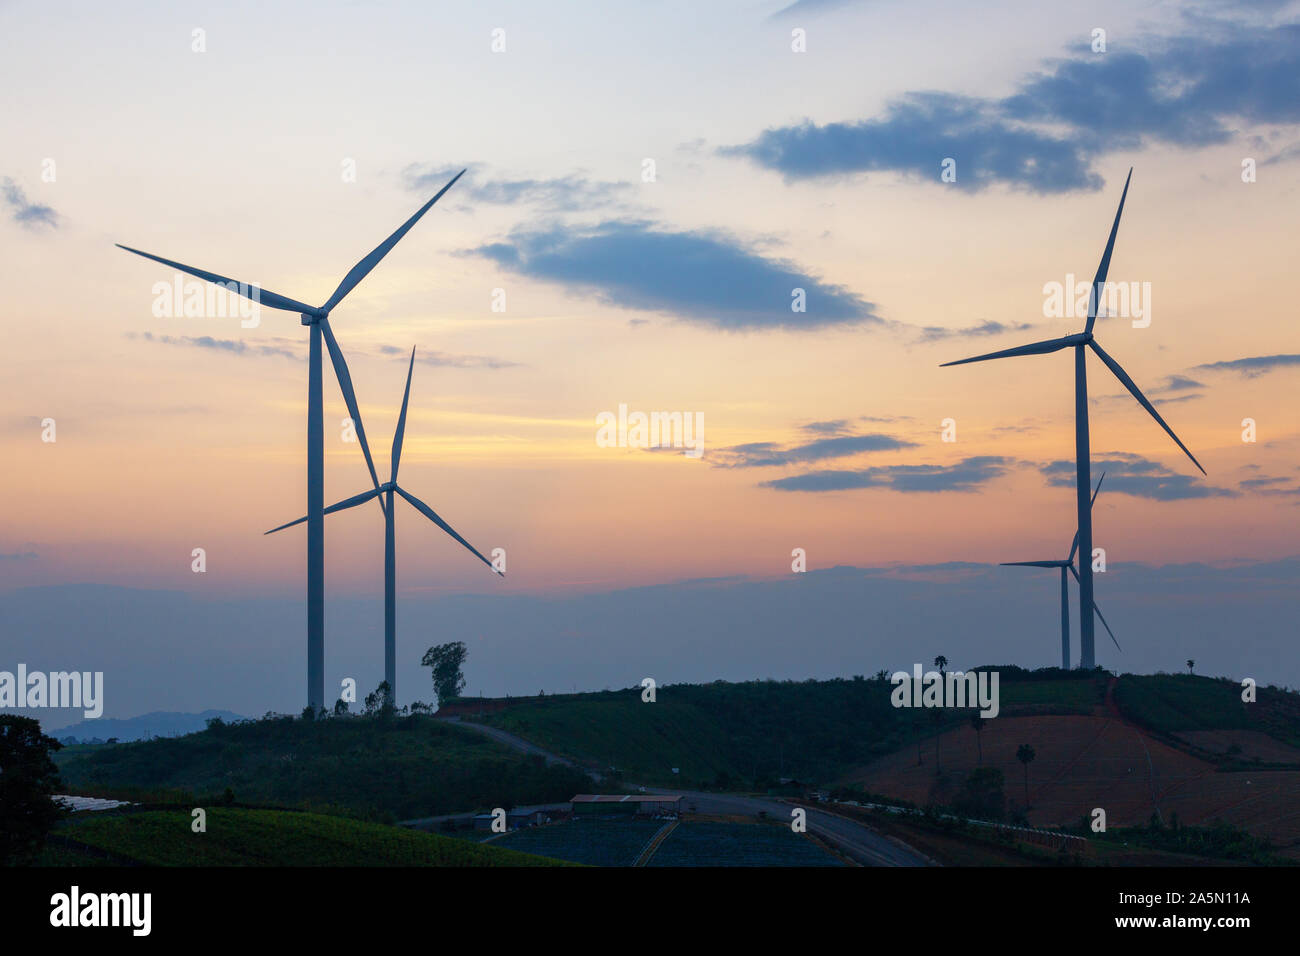 Les moulins à vent de la production végétale de l'électricité l'énergie verte silhouette sunset on the mountain Banque D'Images